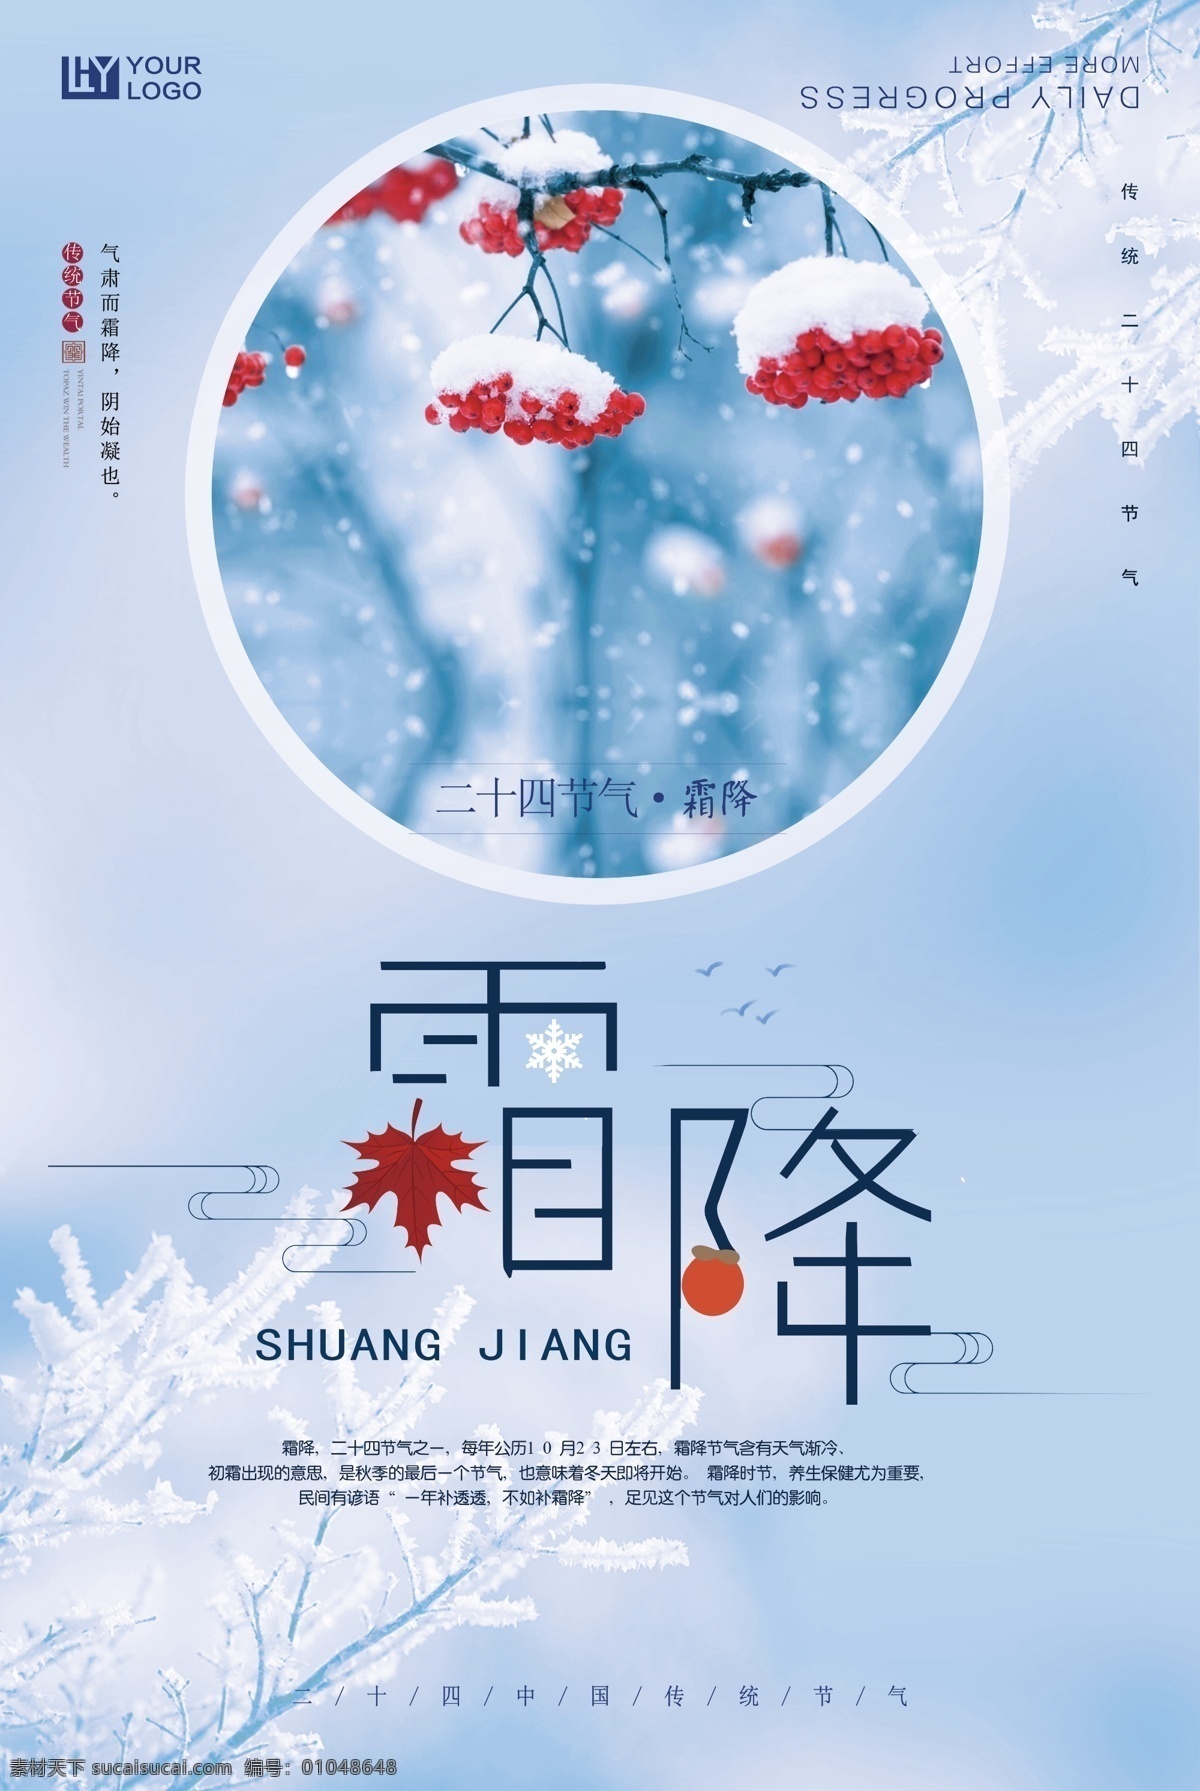 二十四节气 霜降 海报 节日 简约 中国风 复古 传统节日 中国传统节日 流连 流连印象 水墨感兴趣